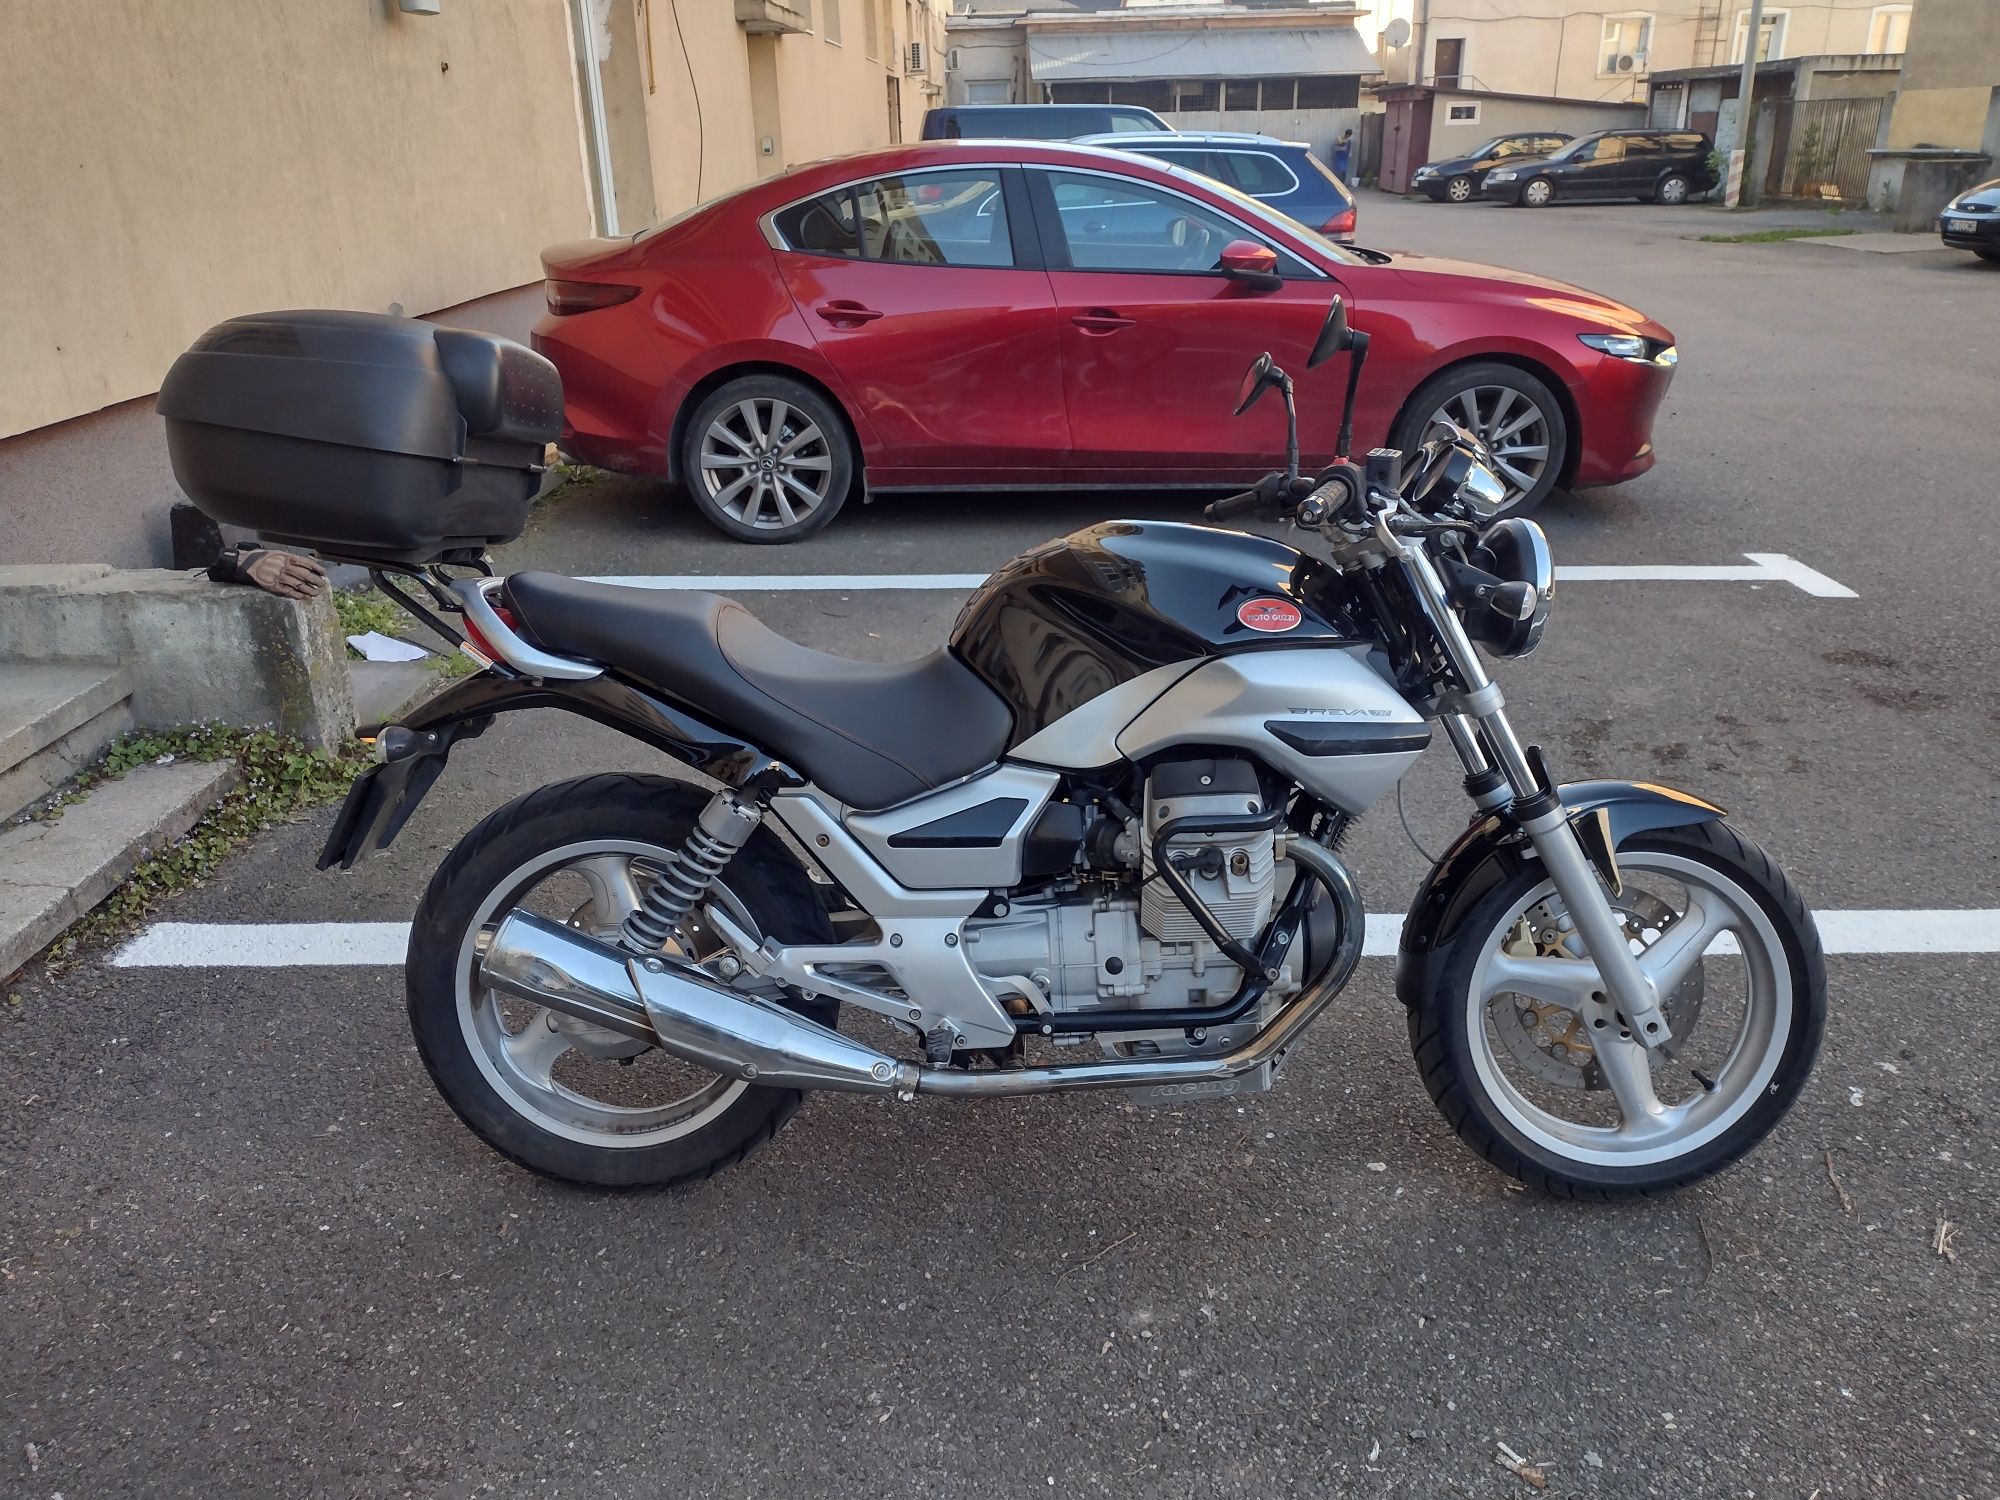 Moto Guzzi Breva 750